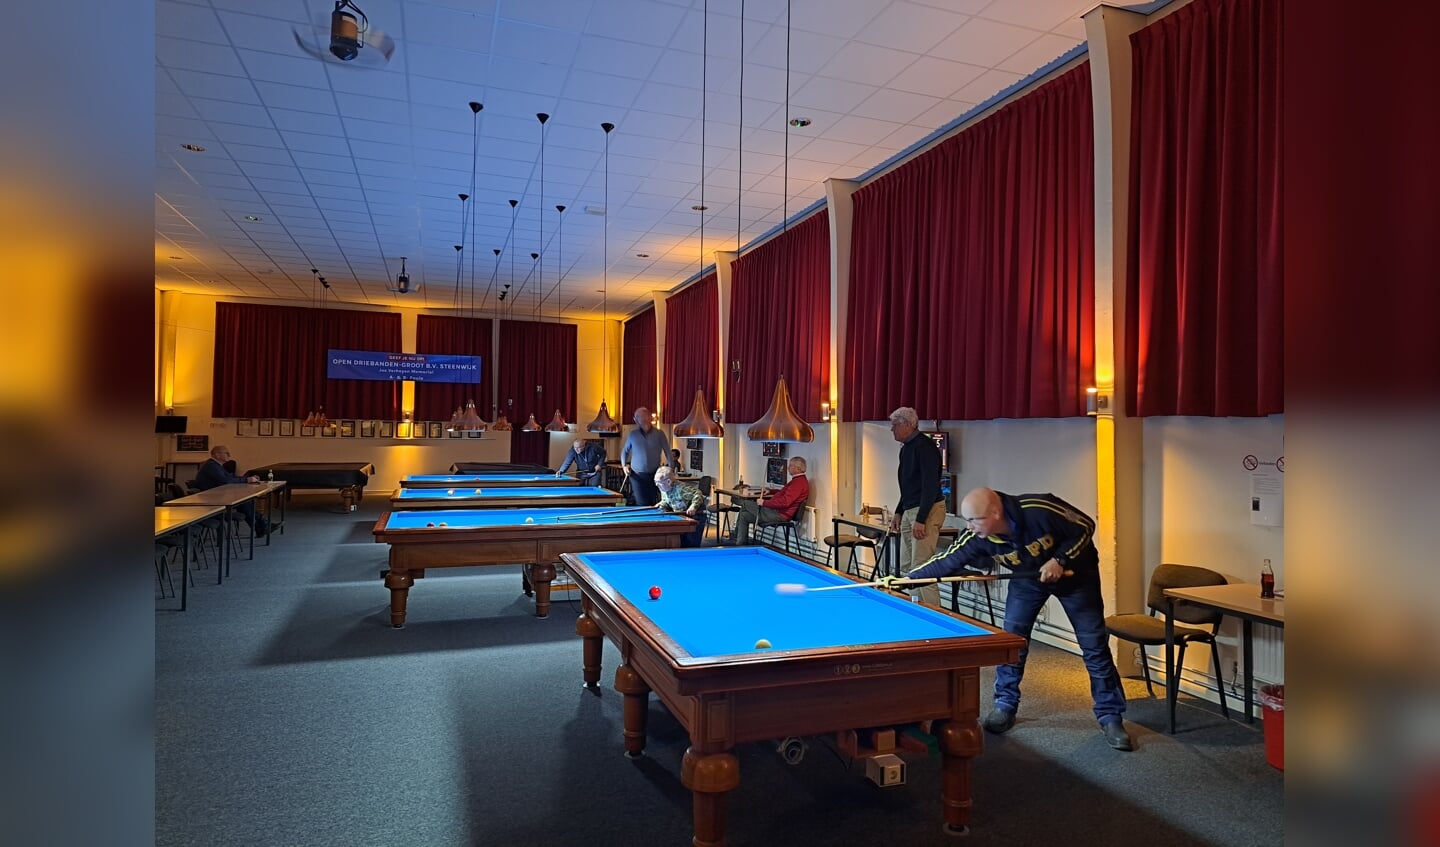 De 107 leden spelen in de oude sportzaal van de Johan van de Kornput Kazerne